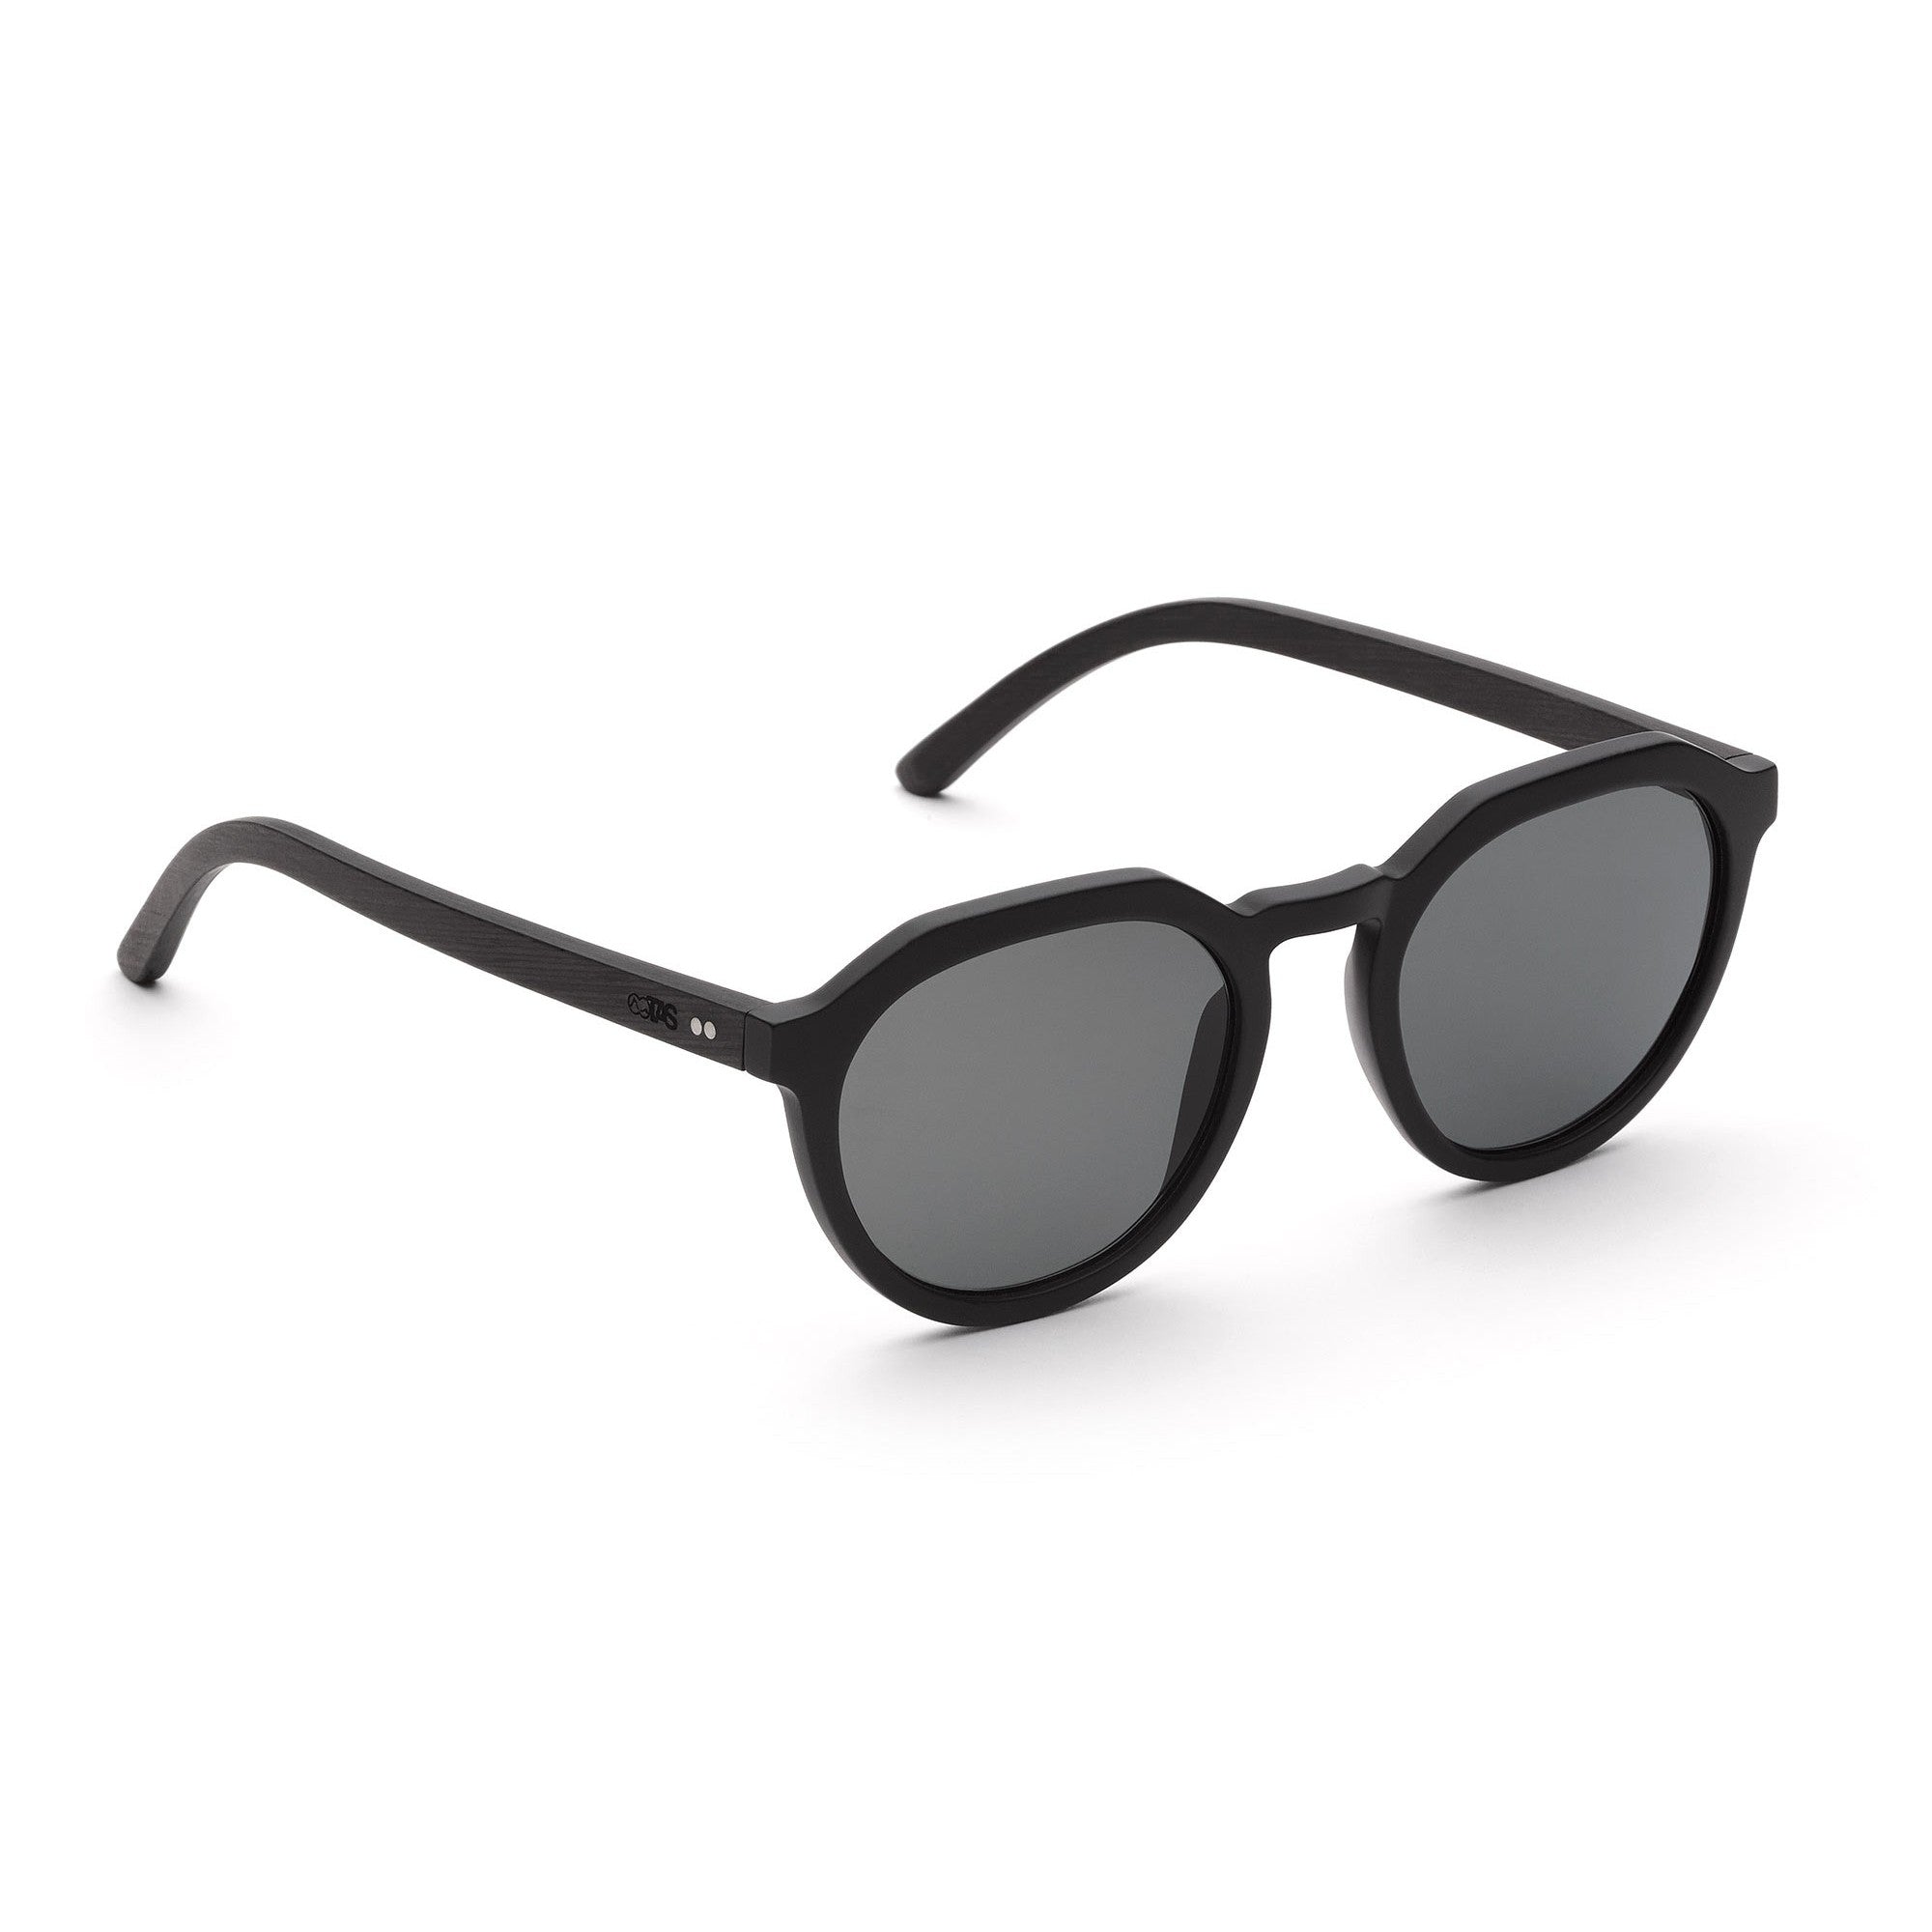 nachhaltige schwarze holz sonnenbrille schwarz flat top graues glas wilson take a shot aus leipzig